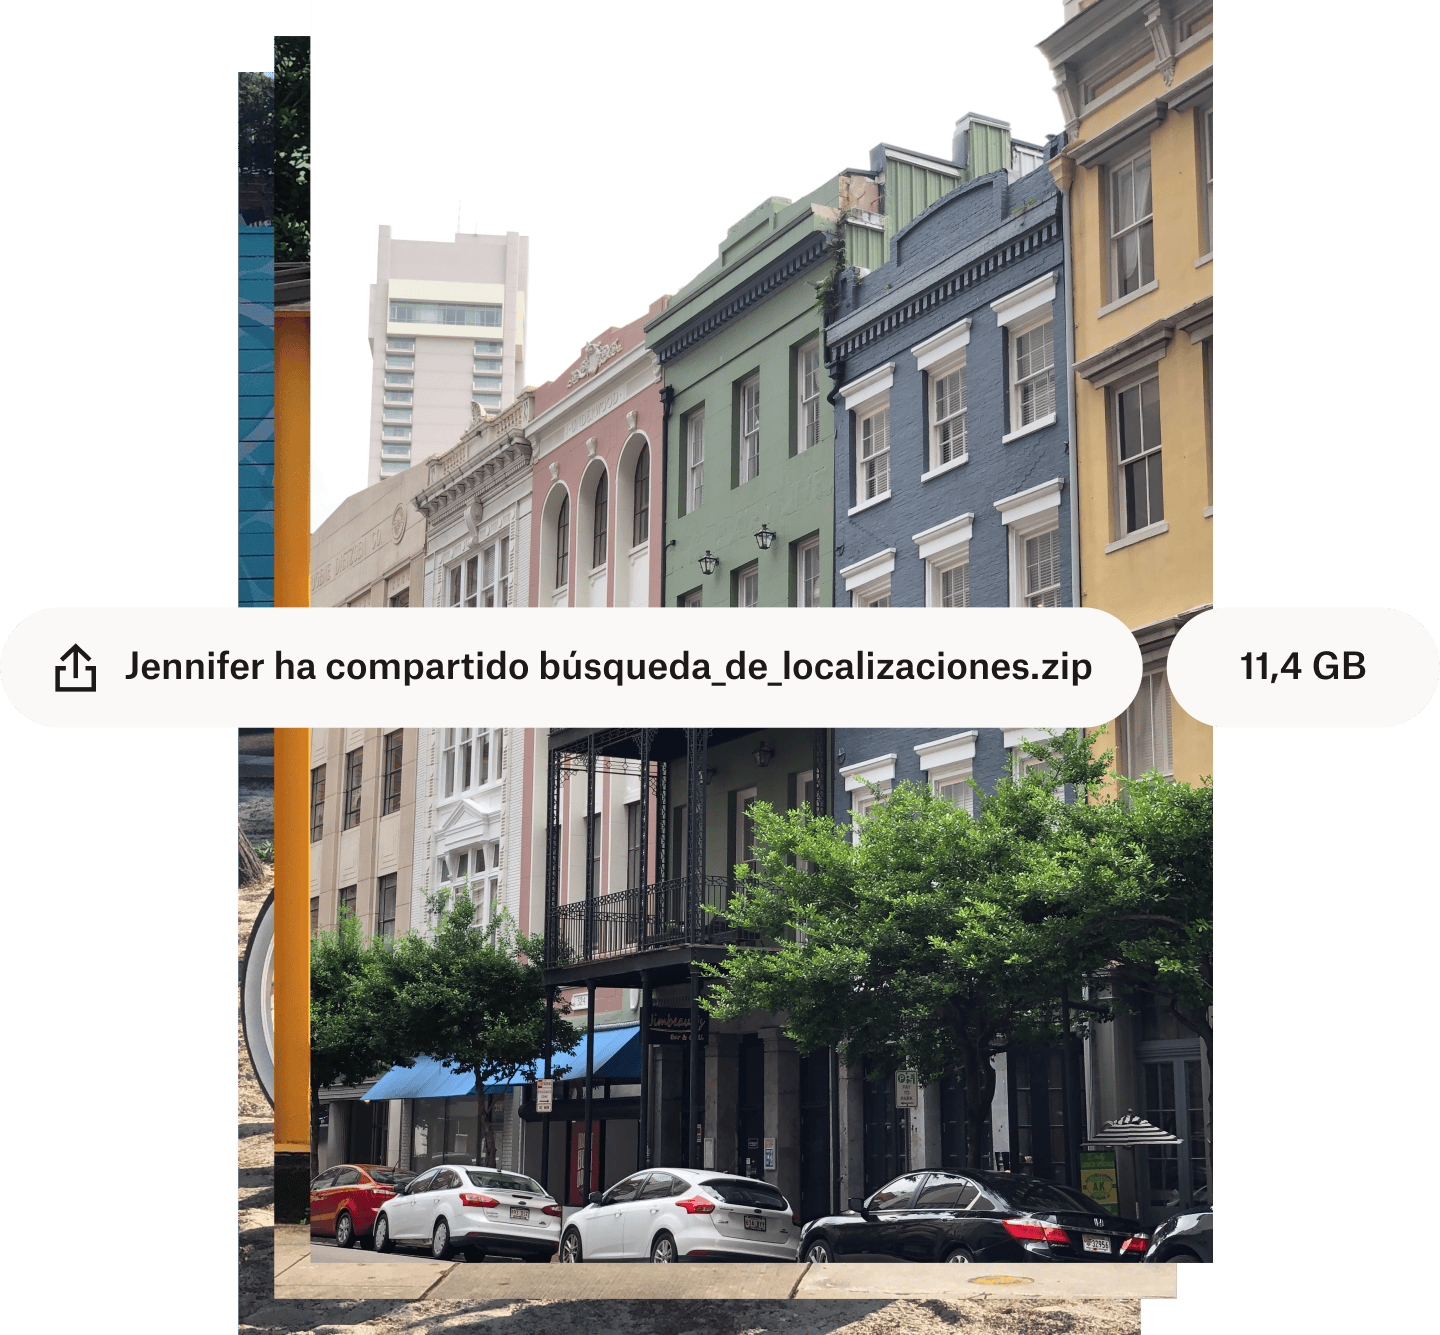 Foto de una calle de una ciudad con coloridos edificios con el nombre y el tamaño del archivo superpuestos en burbujas de texto blanco